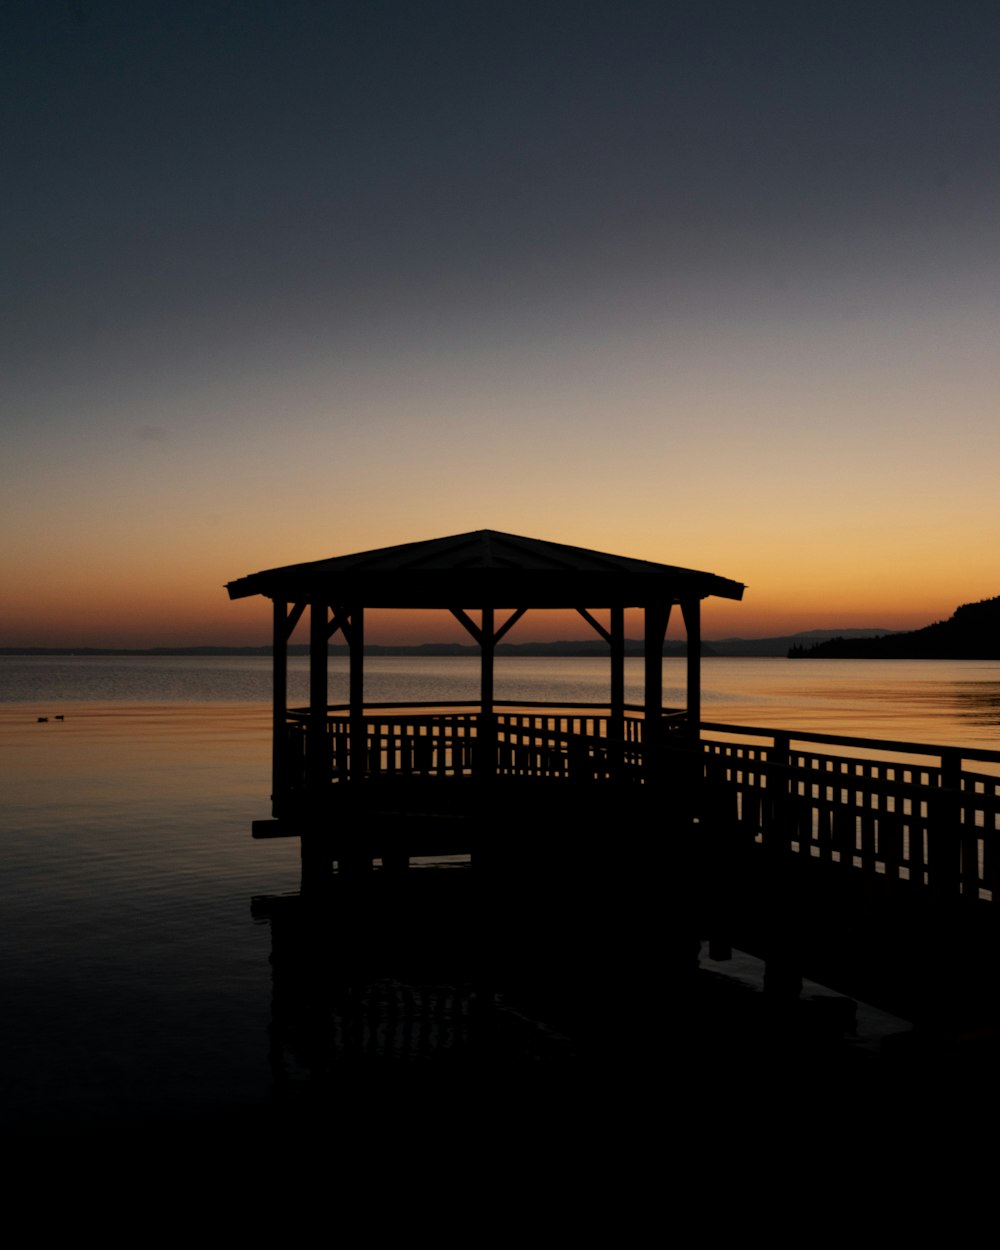 Brauner Holzpavillon am Meeresufer bei Sonnenuntergang